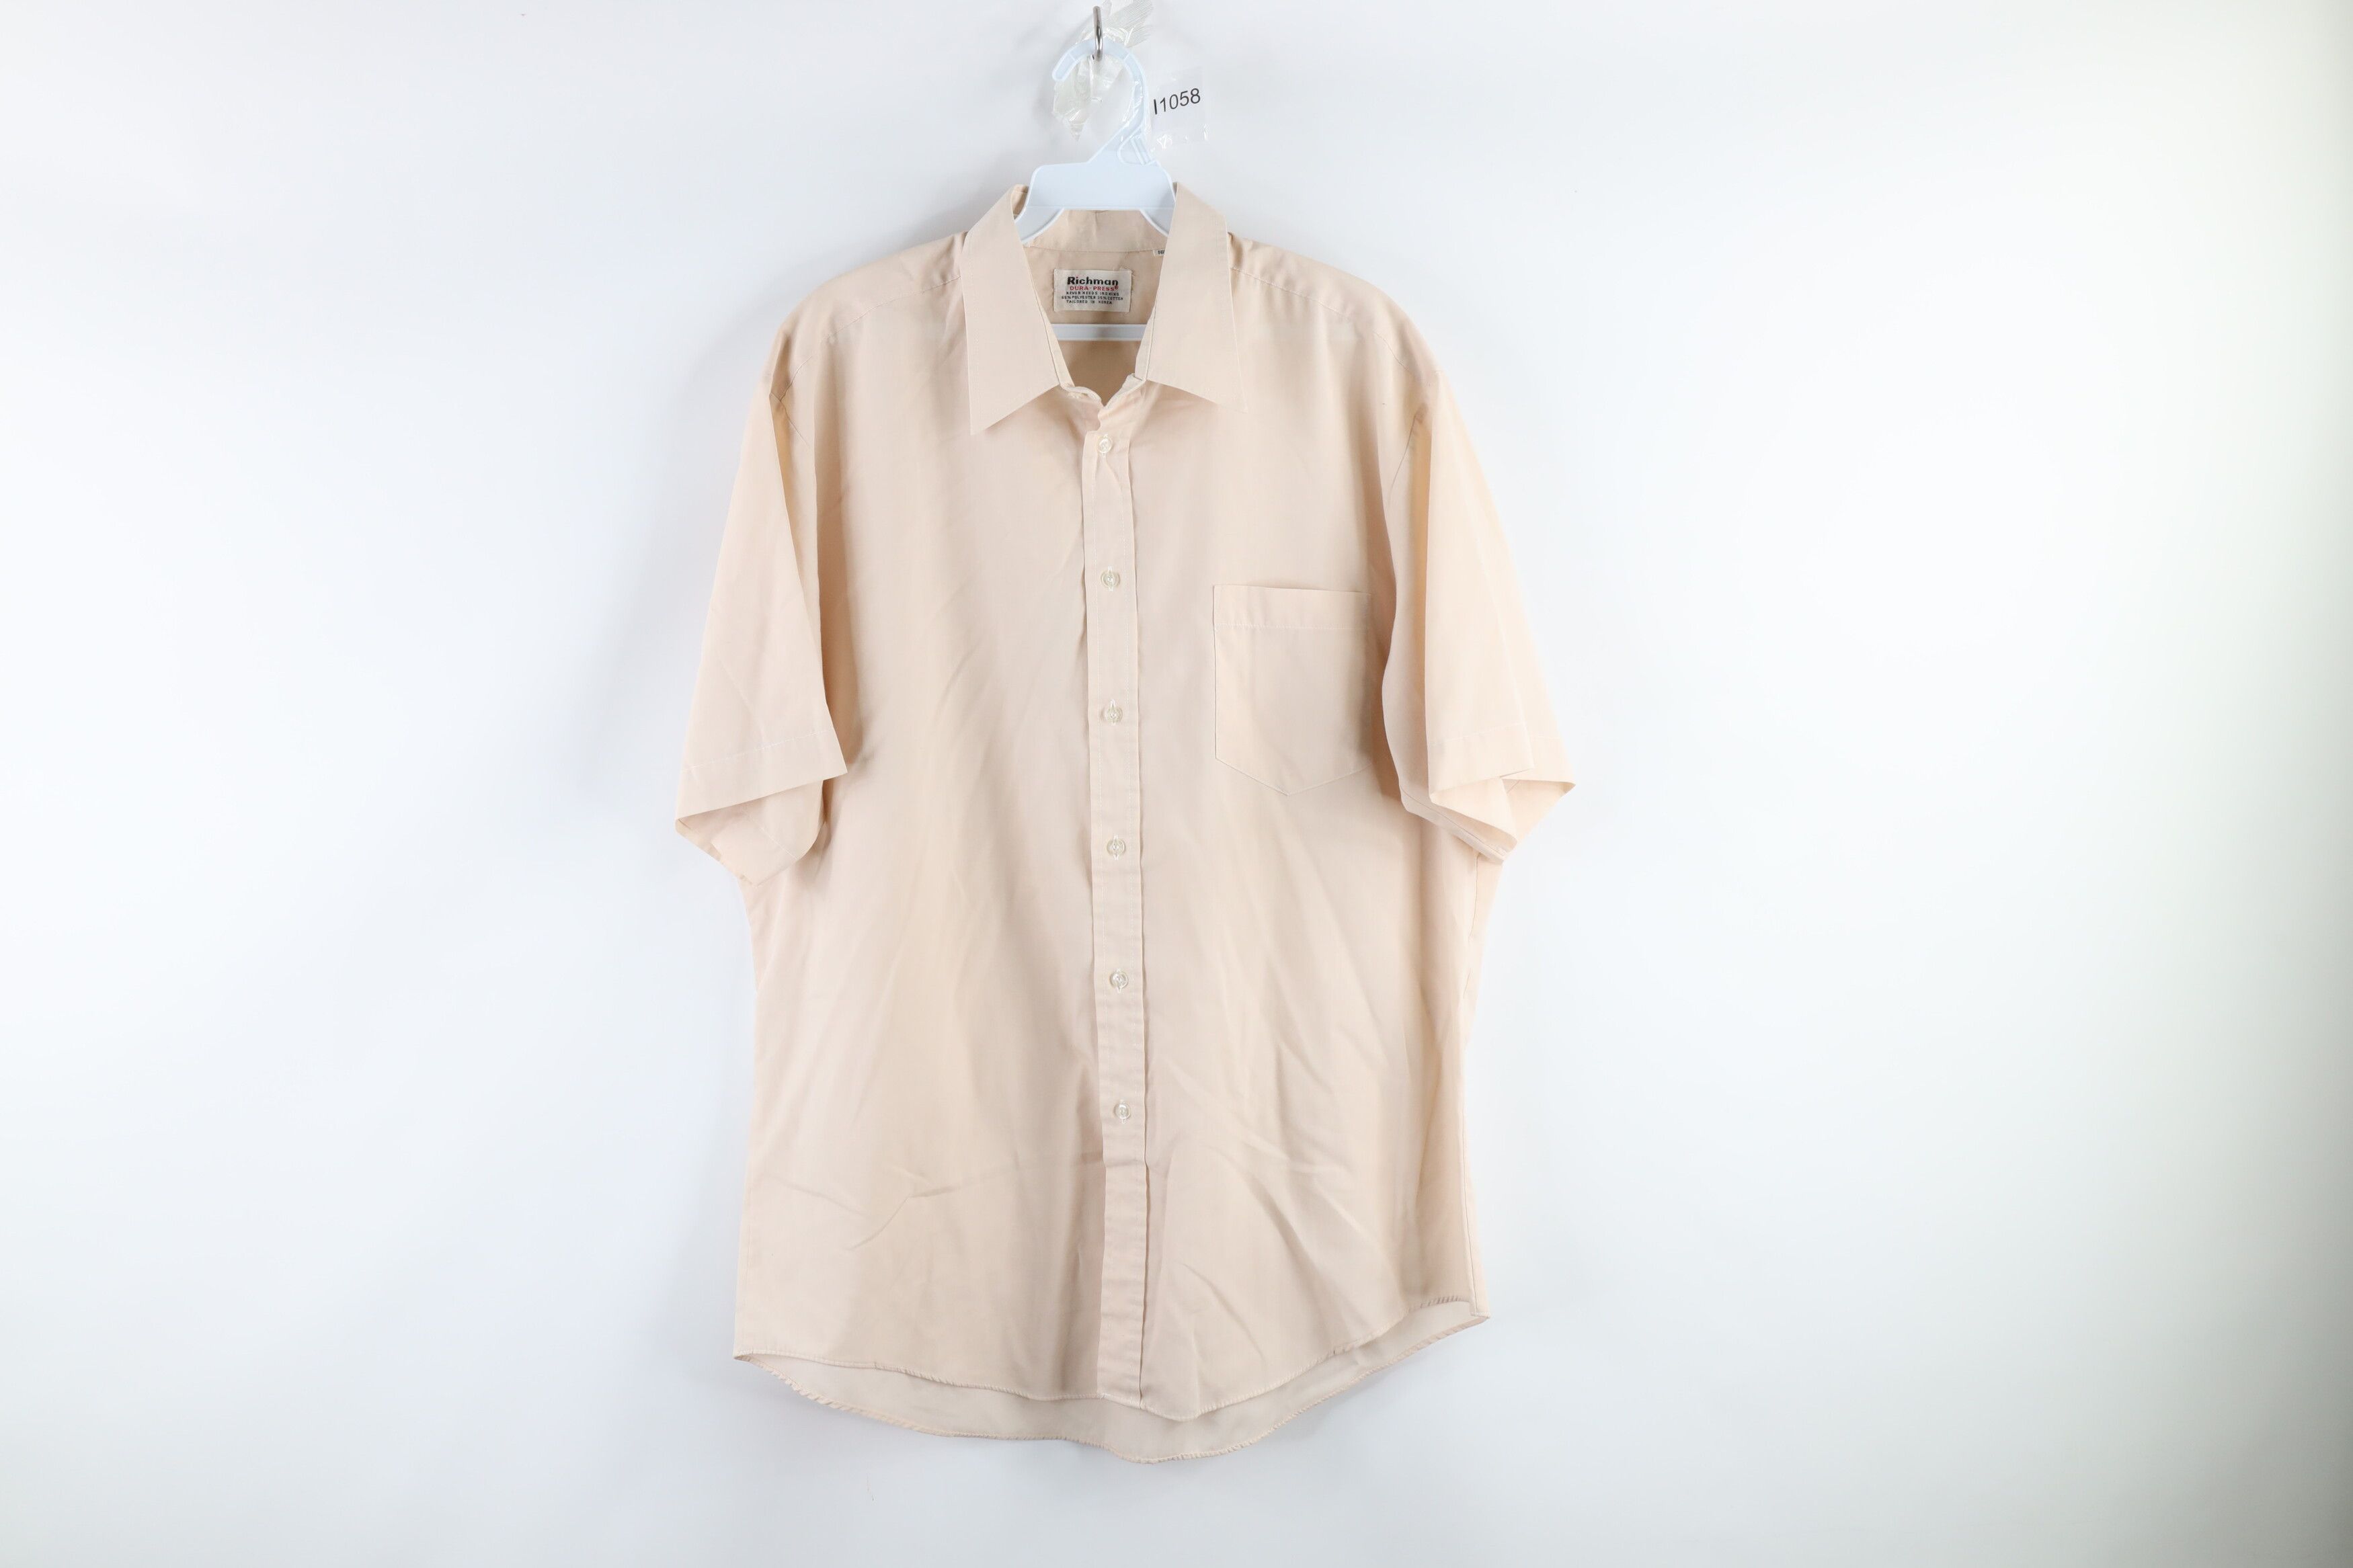 Vintage Vintage 70s Short Sleeve Mechanic Button Shirt Beige Tan Size US L / EU 52-54 / 3 - 1 Preview